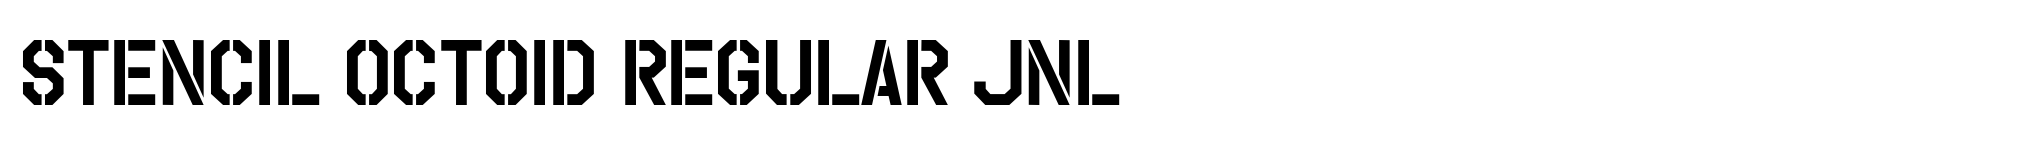 Stencil Octoid Regular JNL image